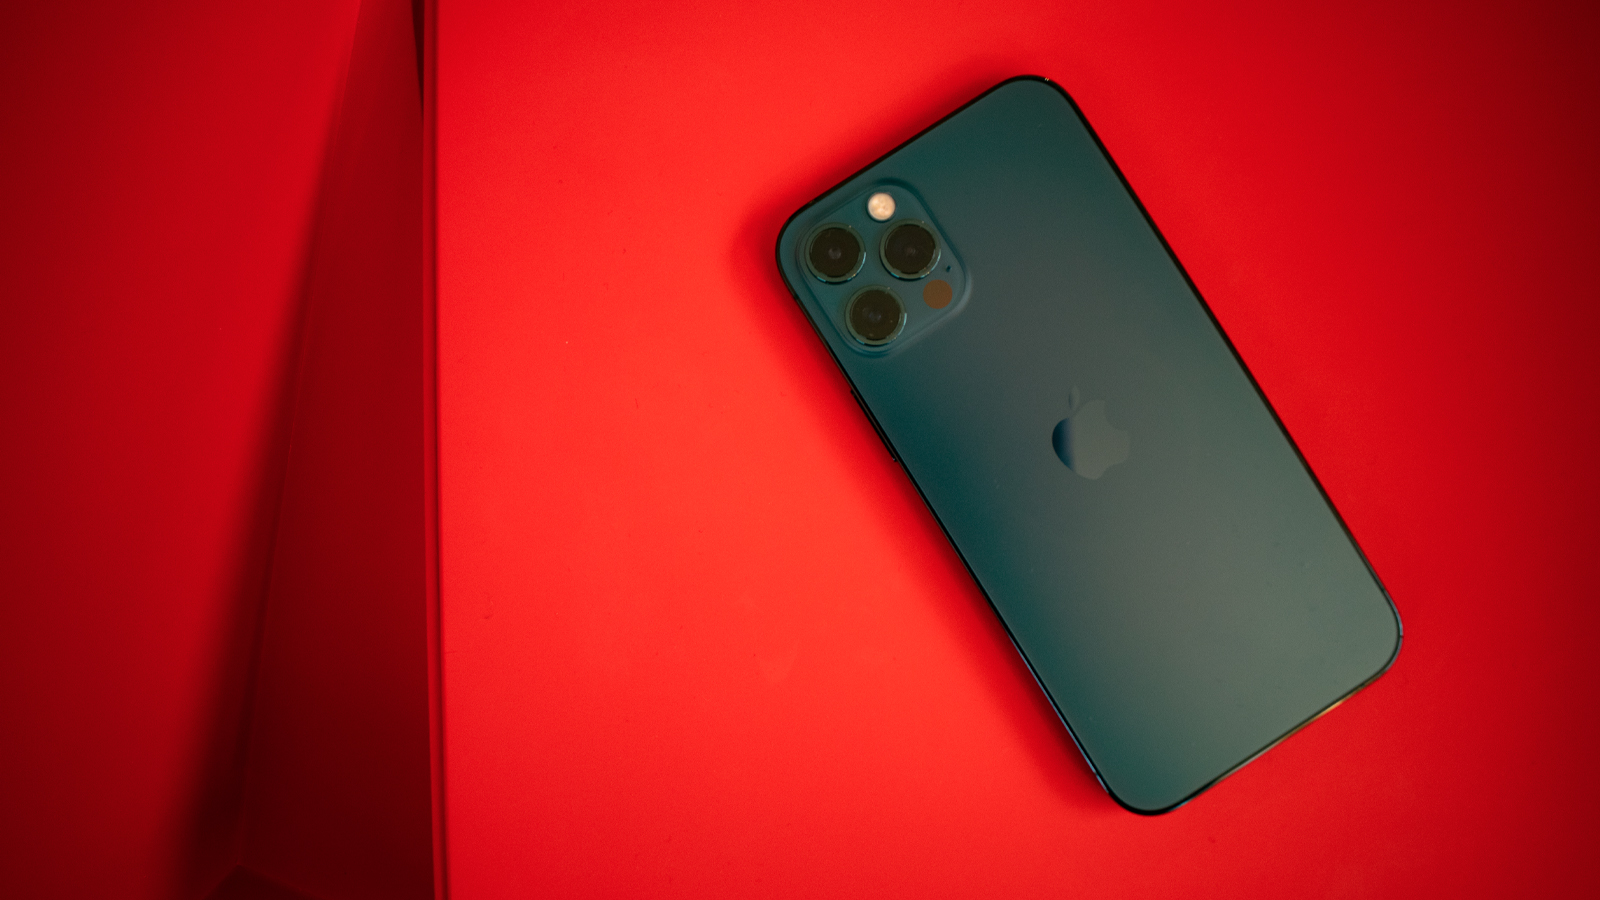 أخبار 30 أكتوبر 2020
Apple هزمه Xiaomi: لم يعد iPhone في المراكز الثلاثة الأولى